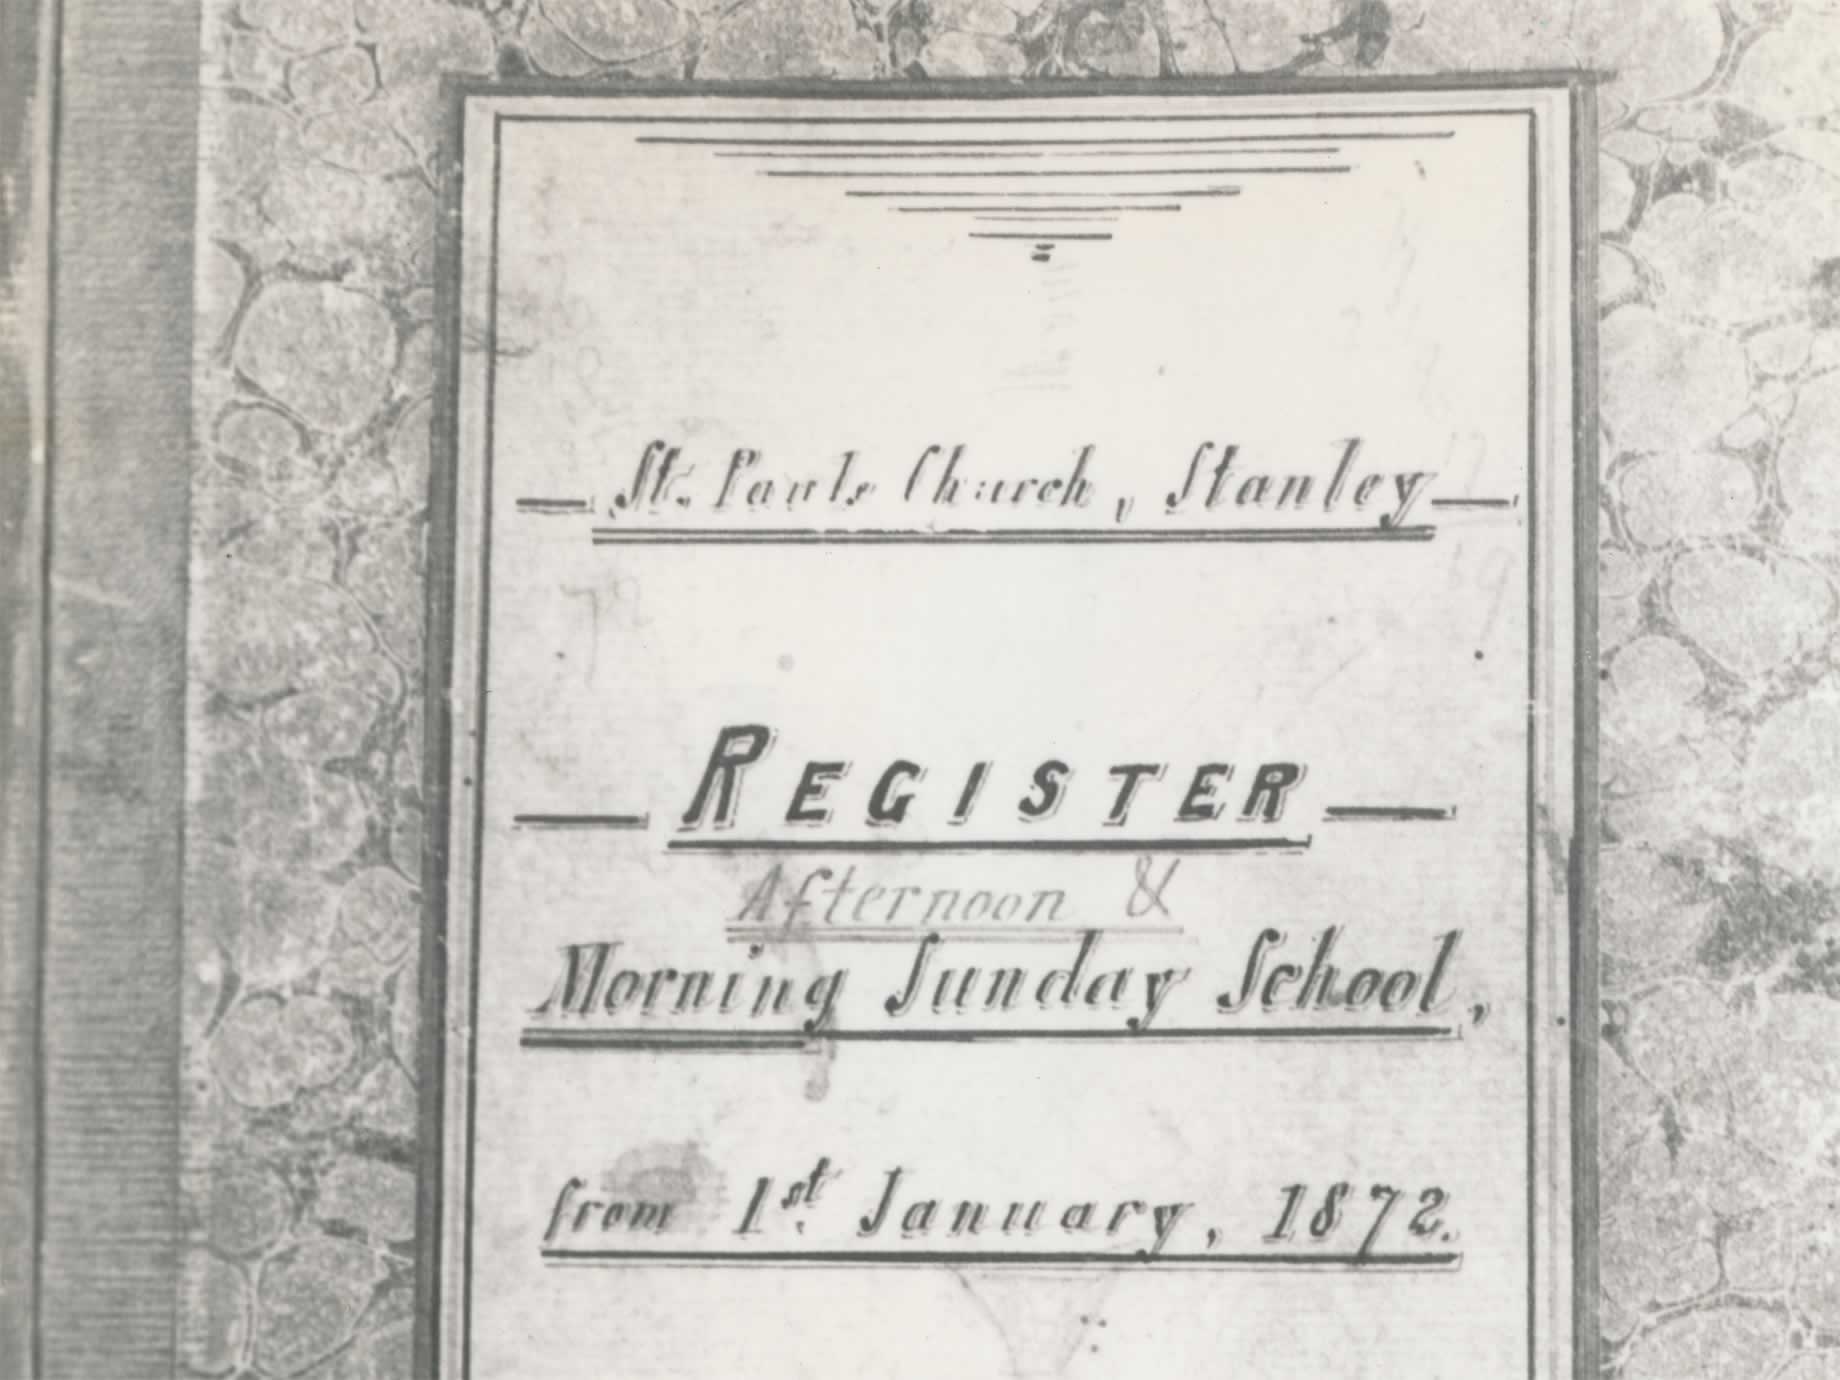 St Paul’s register for Morning Sunday School, 1872